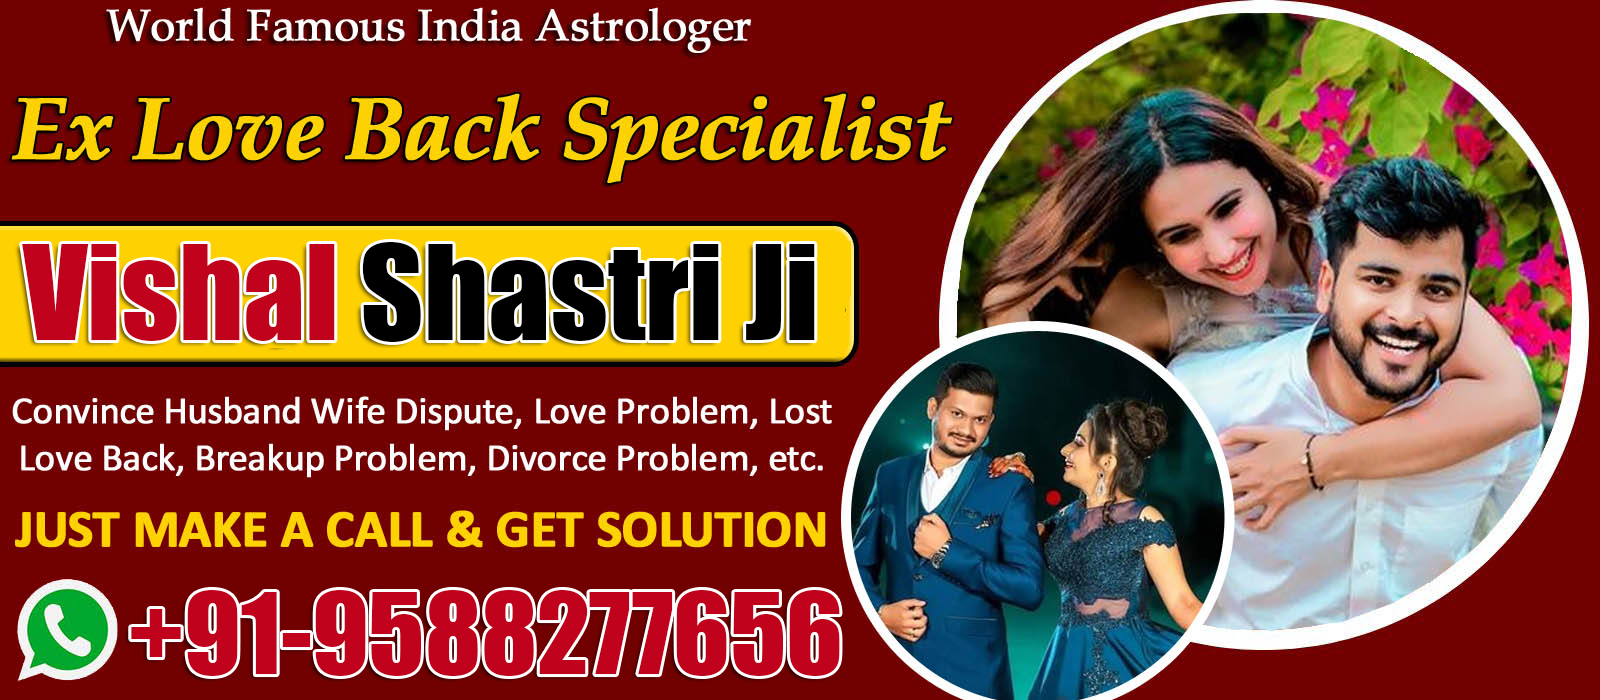 Astrologer Vishal Shastri Ji +91-9588277656